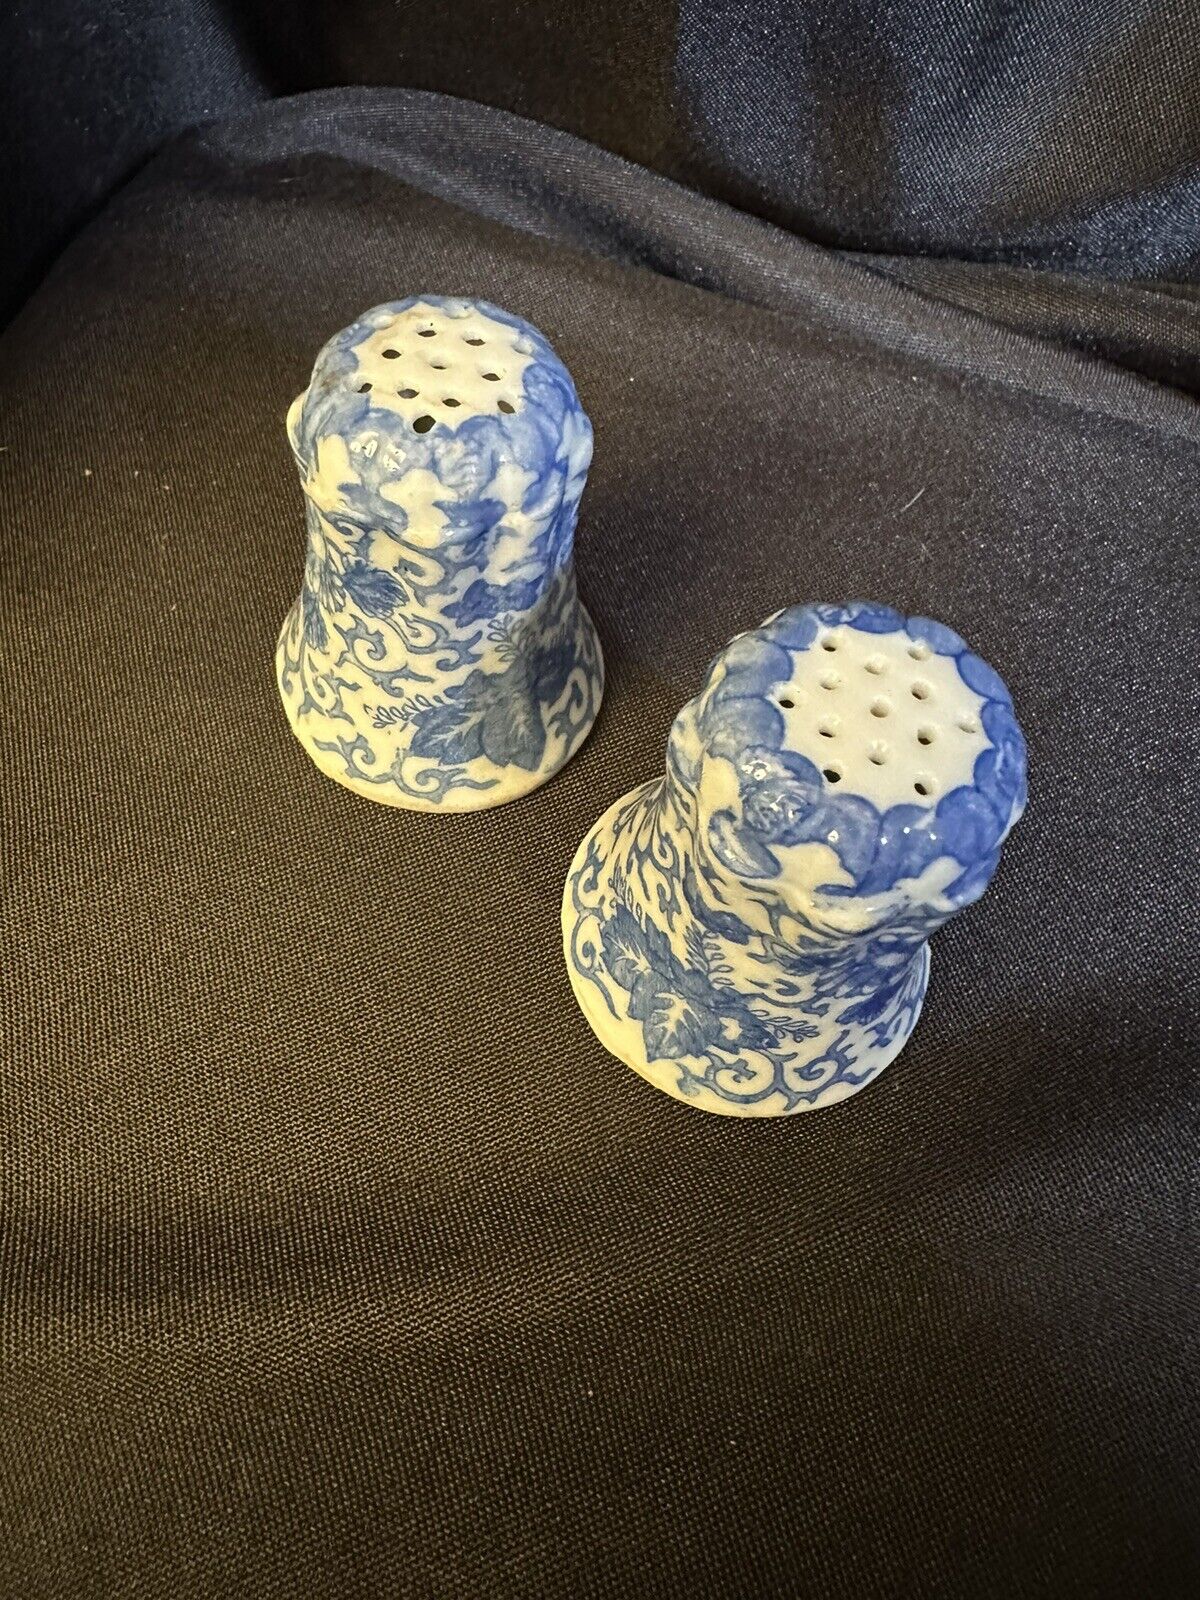 Vintage Blue Floral Ceramic Salt and Pepper Shakers